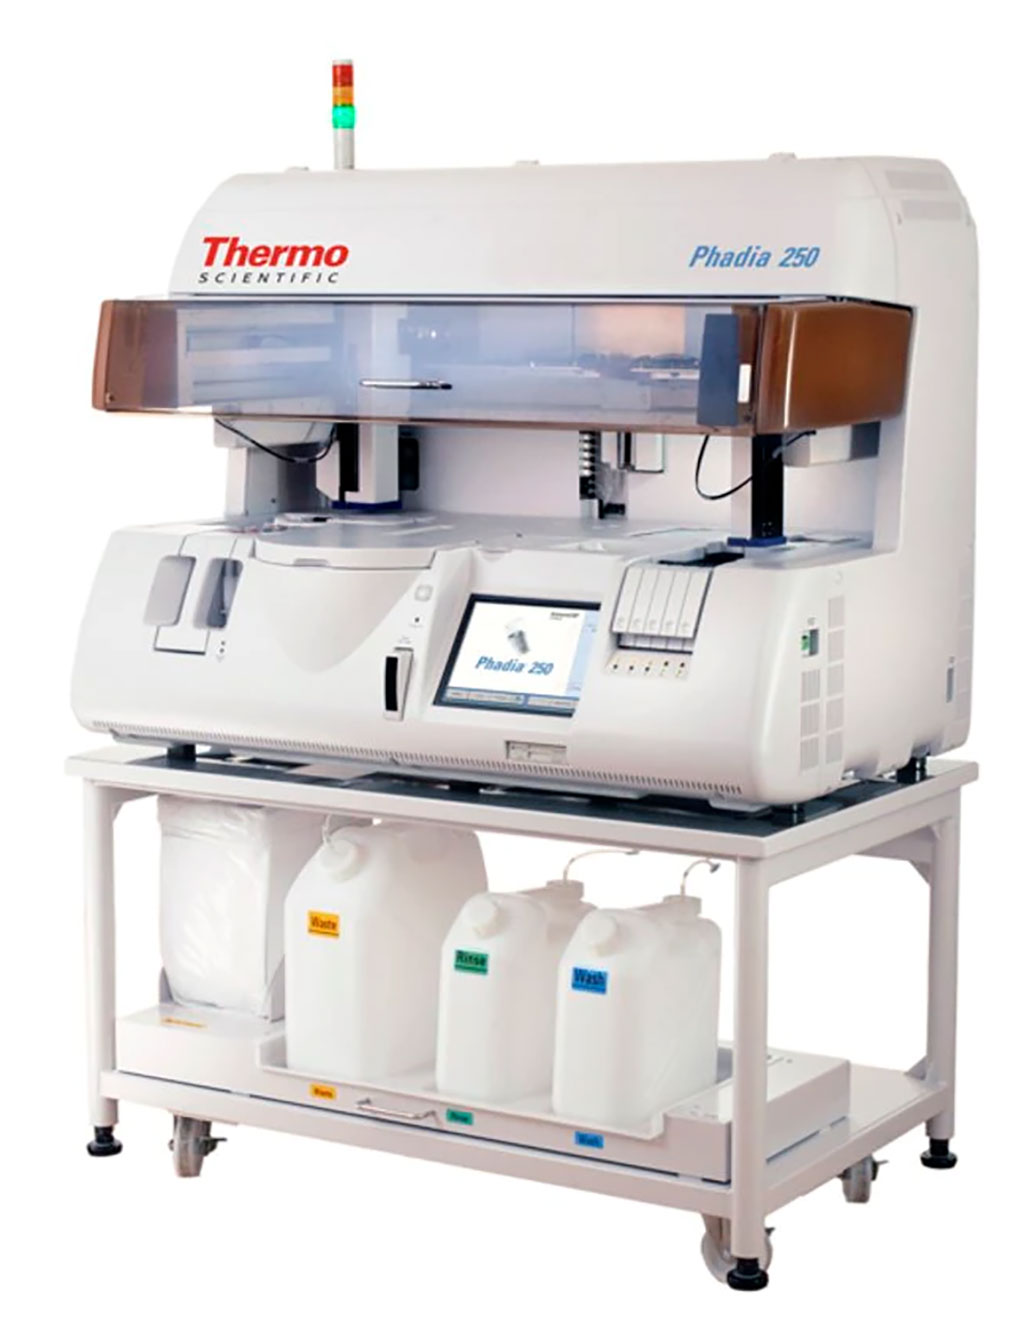 Imagen: El analizador de inmunoensayo Phadia 250, además de las pruebas de alergia, permite la medición de autoanticuerpos de más de 20 enfermedades relacionadas con la autoinmunidad utilizando la línea de productos EliA (Fotografía cortesía de Thermo Fisher Scientific)